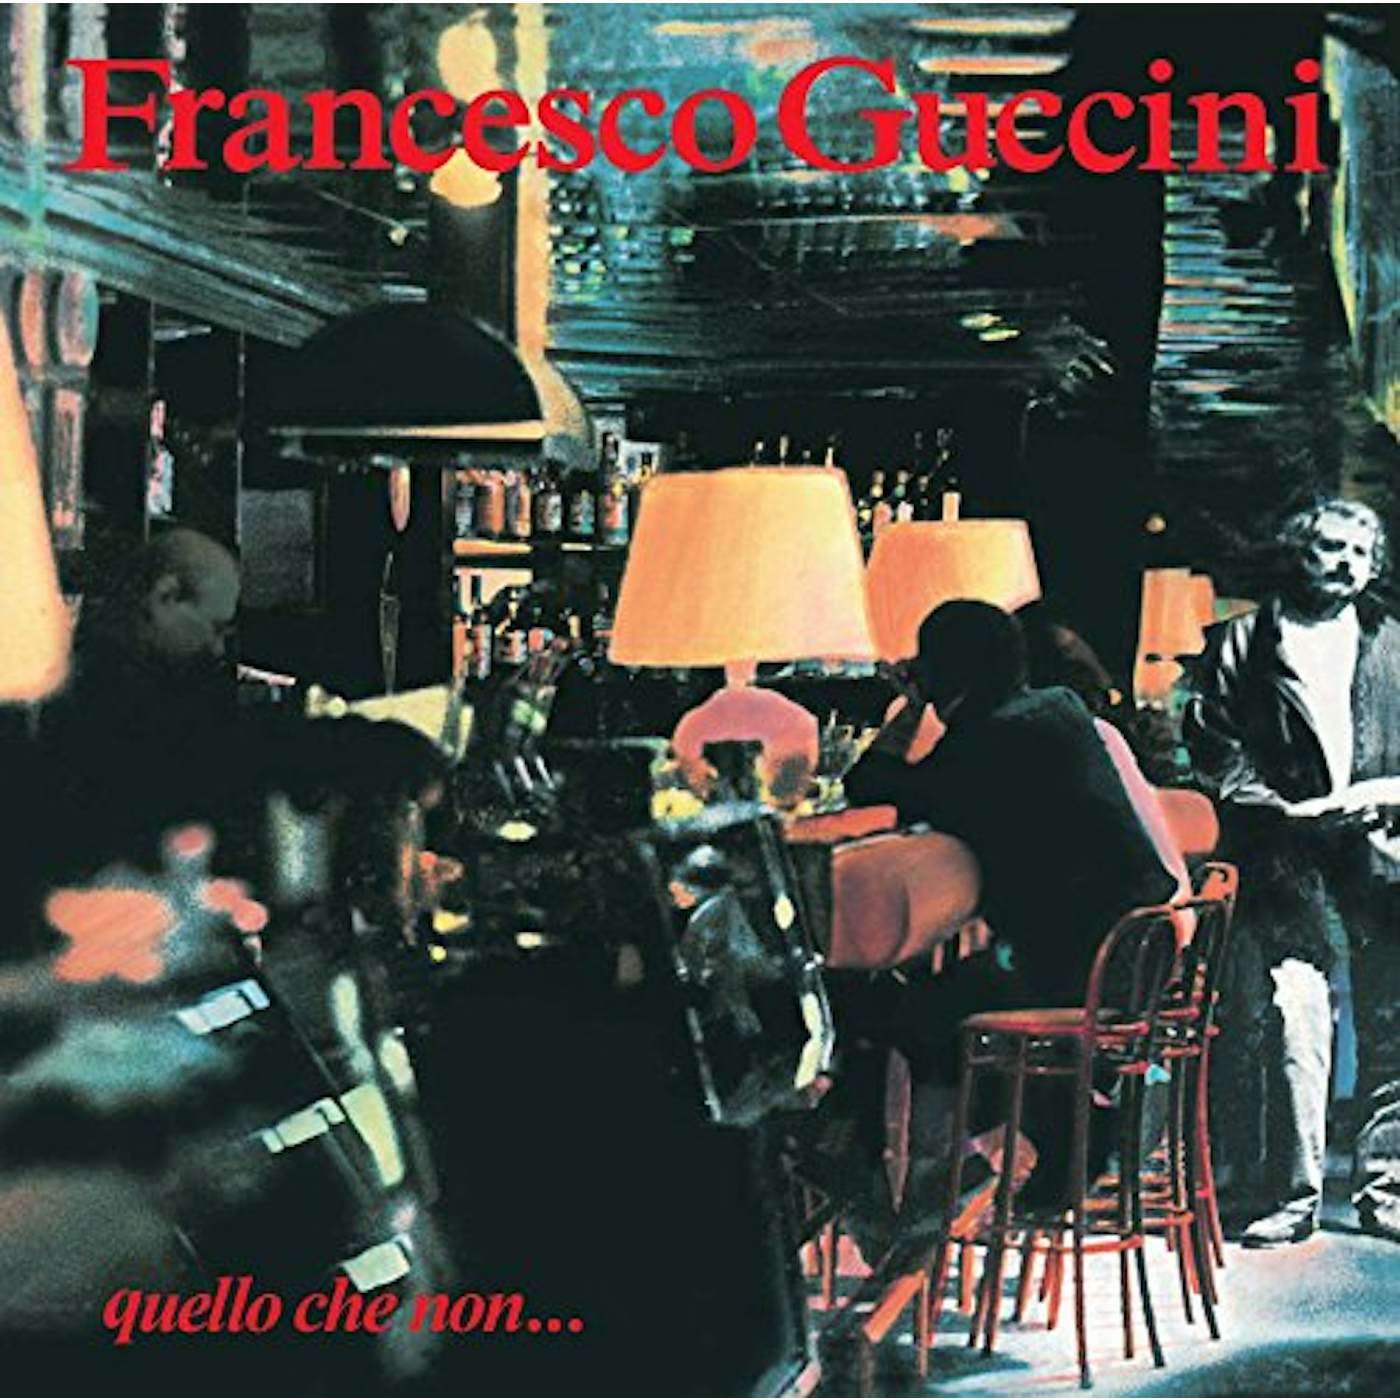 Francesco Guccini QUELLO CHE NON Vinyl Record